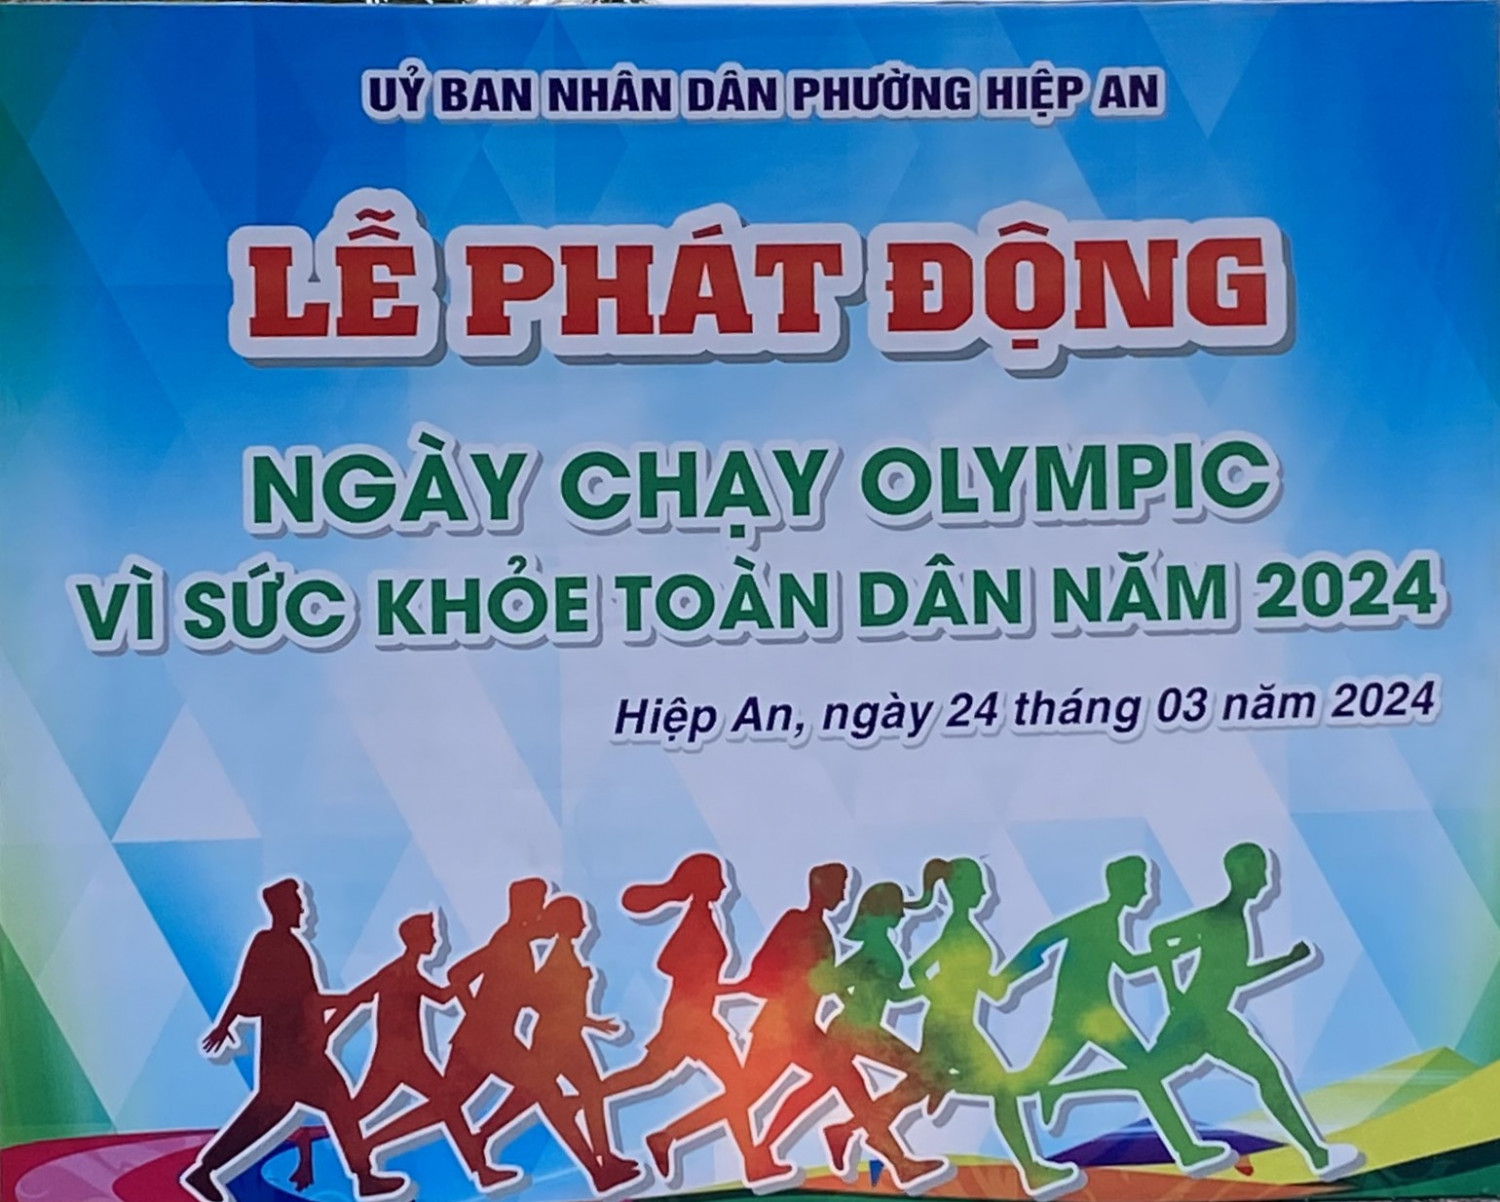 Trường Tiểu học Kim Đồng tham gia các hoạt động “Ngày chạy Olympic vì sức khoẻ toàn dân” năm 2024 và Hội thi nấu ăn mừng Ngày quốc tế Hạnh Phúc 20/03 do UBND phường Hiệp An tổ chức.